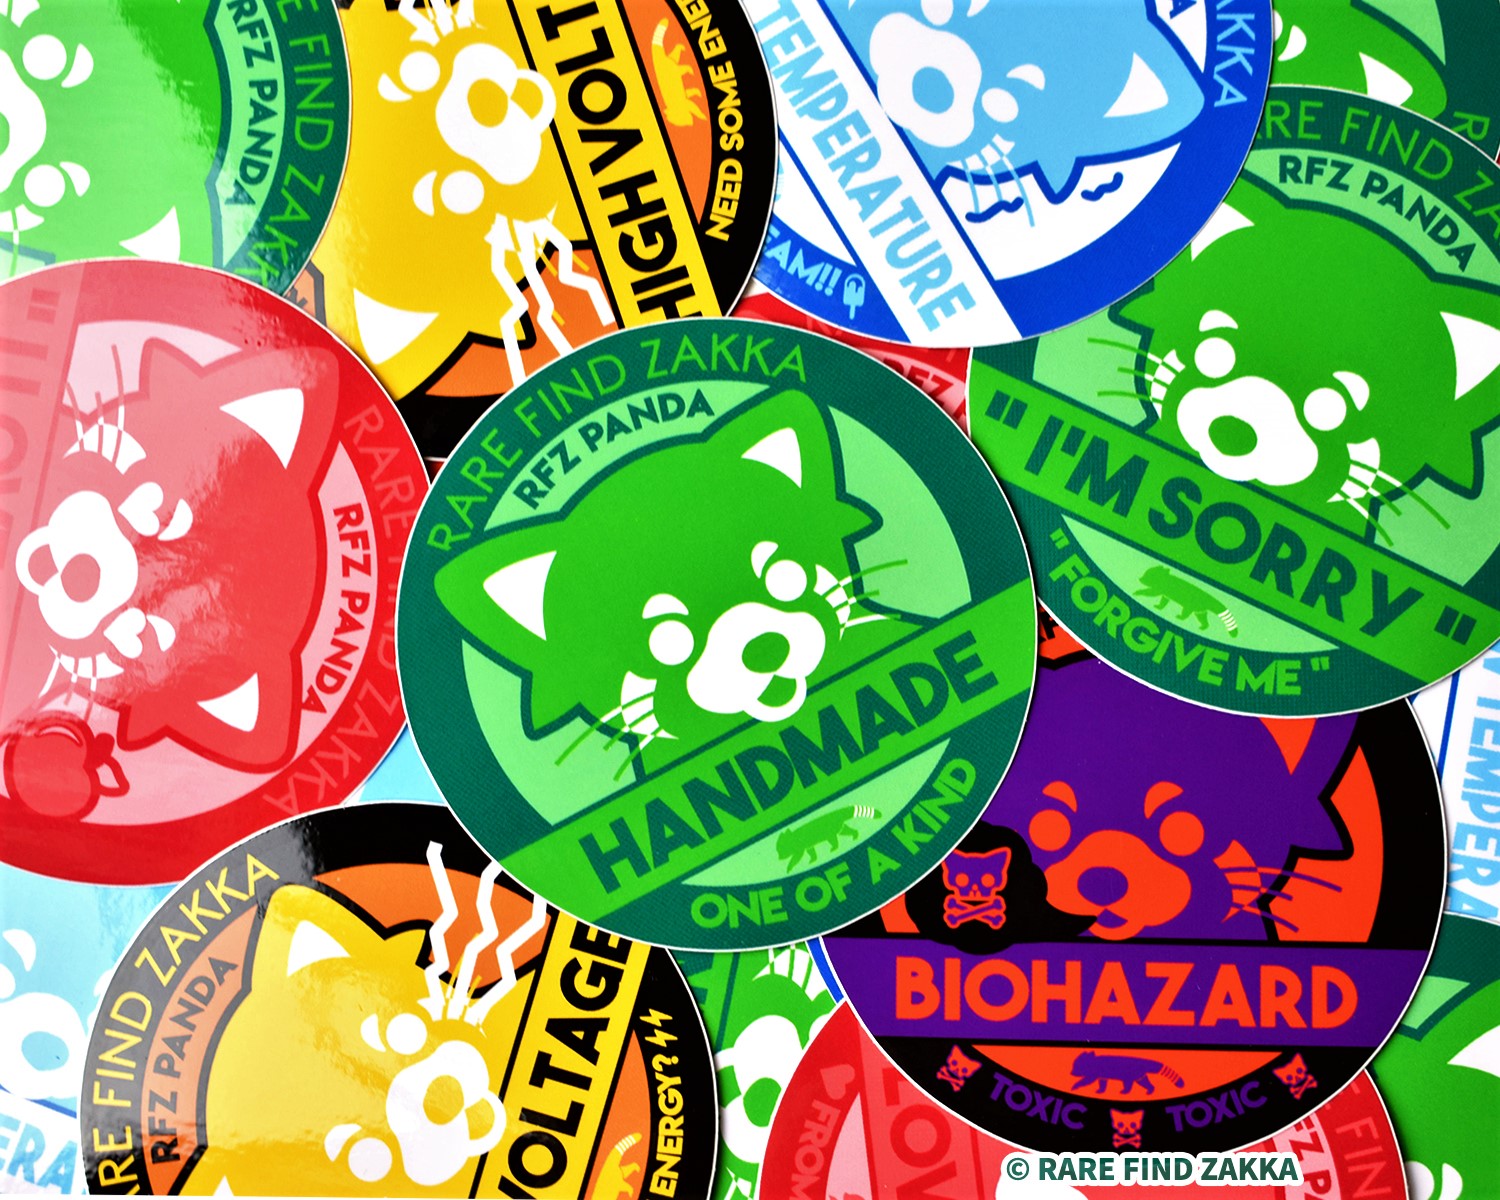 RFZ ORIGINALS Sticker Collection "HANDMADE"